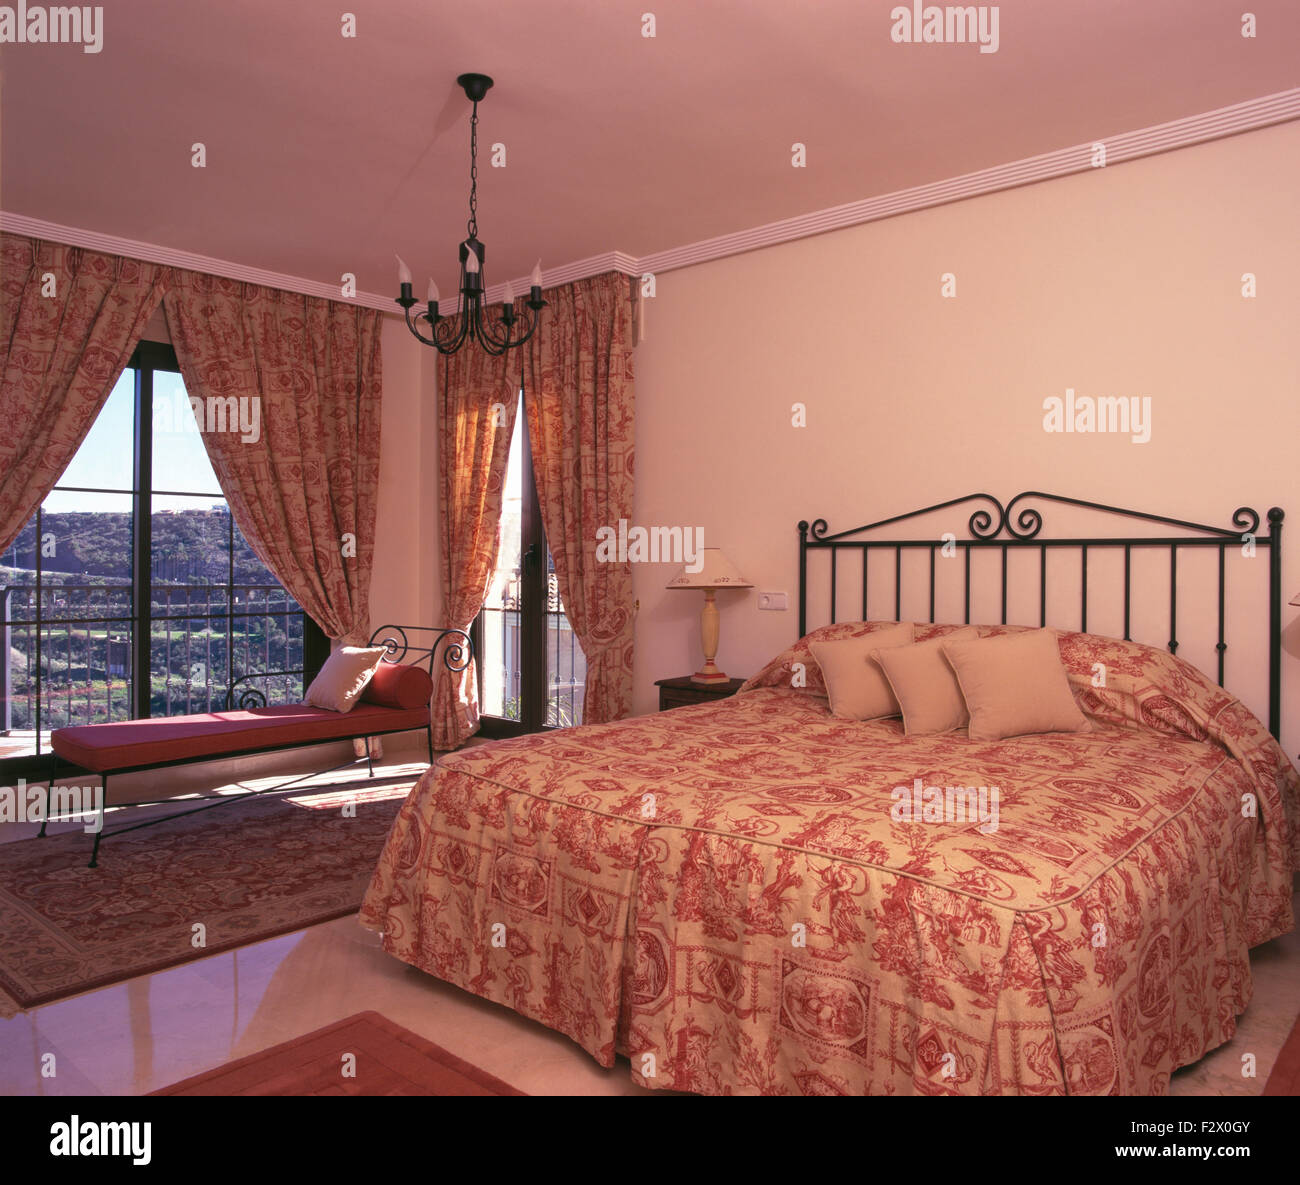 Rosa quilt modellato sul letto di metallo in spagnolo camera da letto con il coordinamento di tende su porte di vetro per balcone Foto Stock